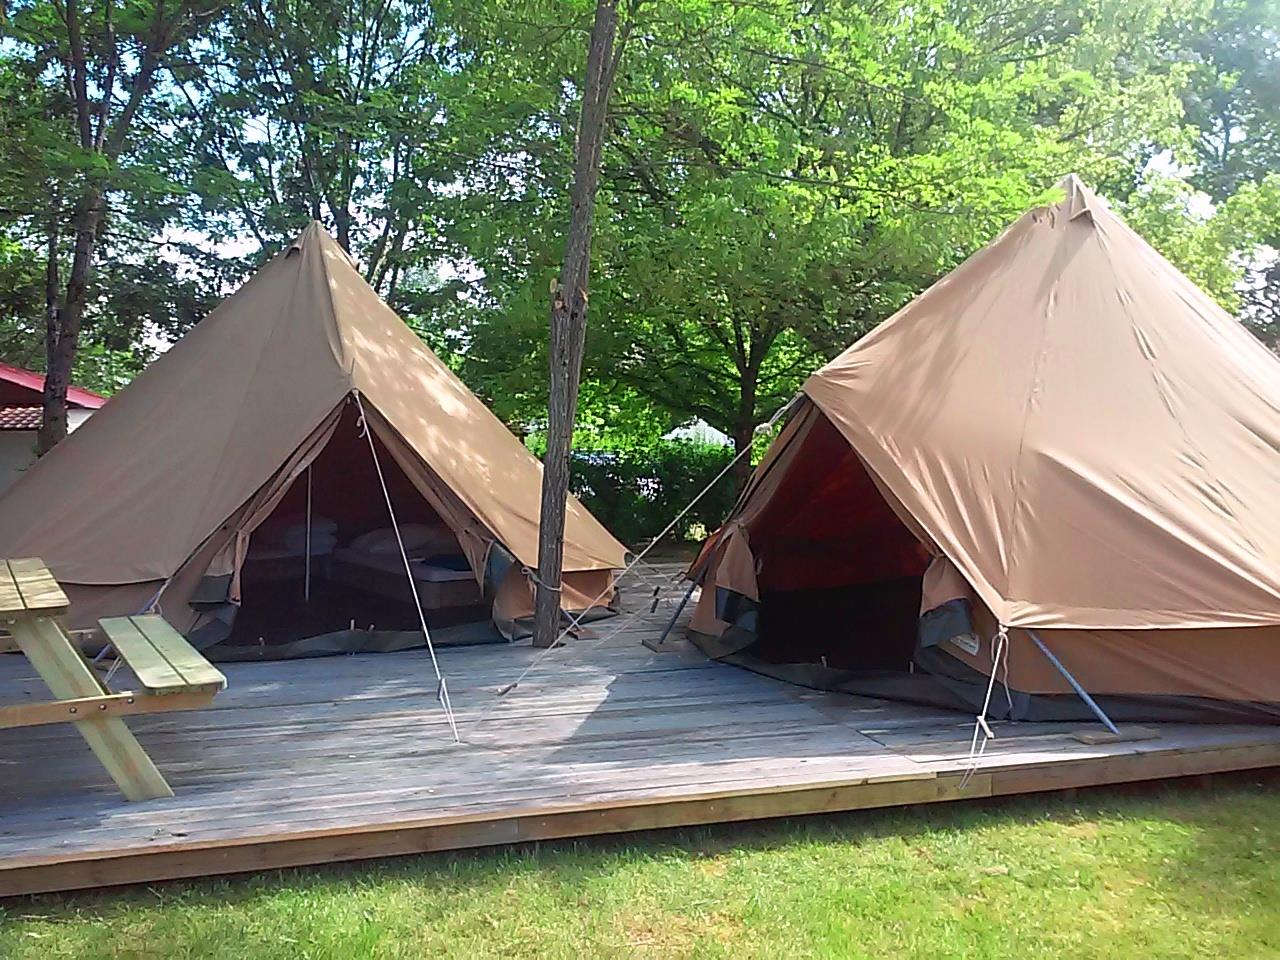 Mietunterkunft - Tente Aménagée 2 Modules Sur Terrasse 1 Tente Repas Avec Cuisine Équipée Et 1 Tente Avec Un Espace Pour Dormir - Camping Las Patrasses